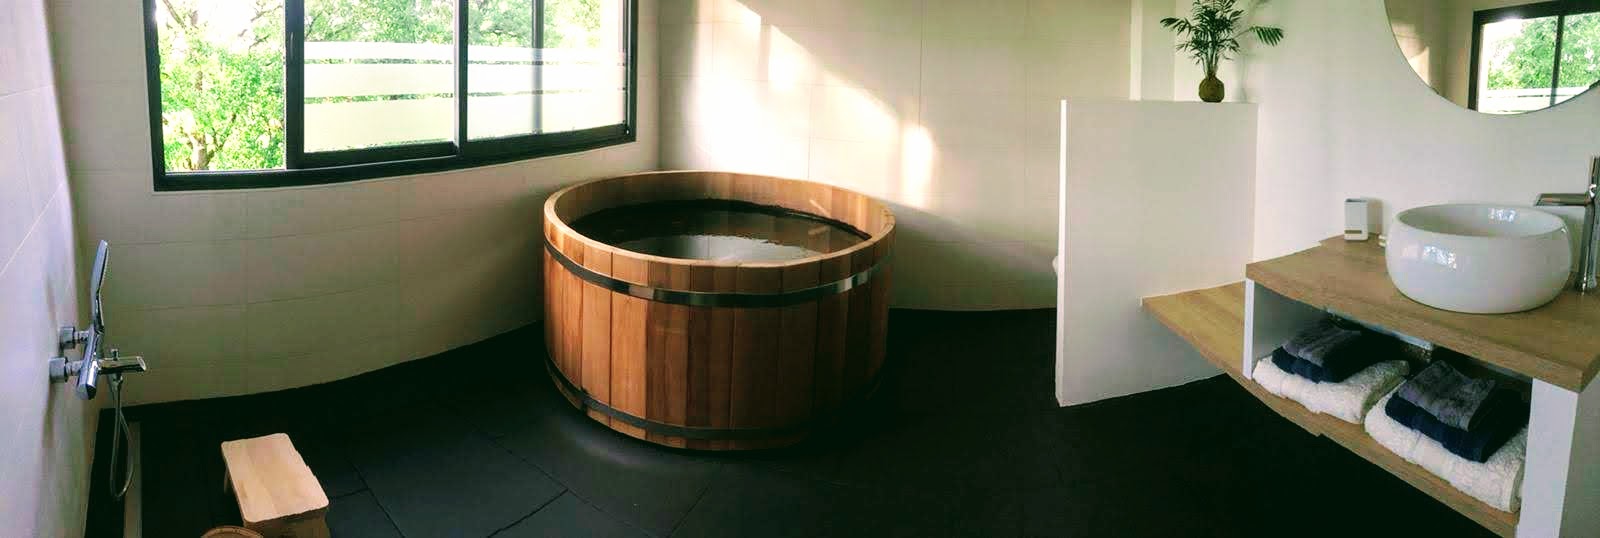 Ofuro (bain) en bois, taouret et seau en hinoki (cèdre japonais), douchette, prêt(e) pour le rituel du bain japonais ?